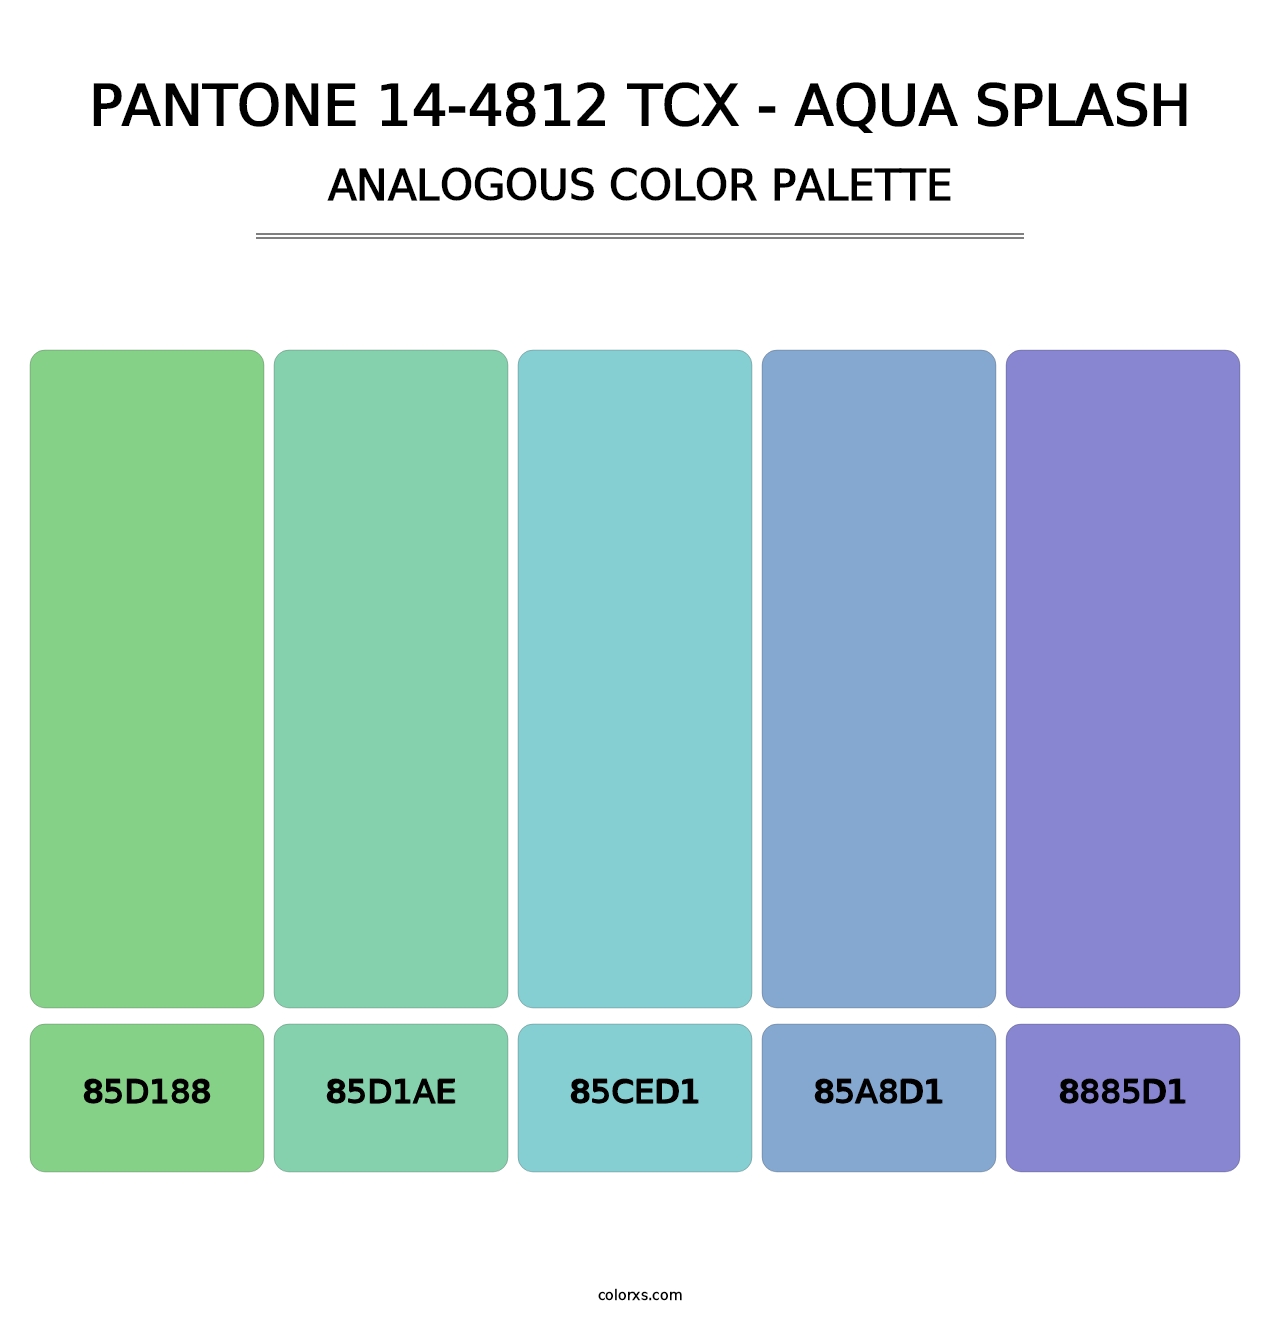 PANTONE 14-4812 TCX - Aqua Splash - Analogous Color Palette